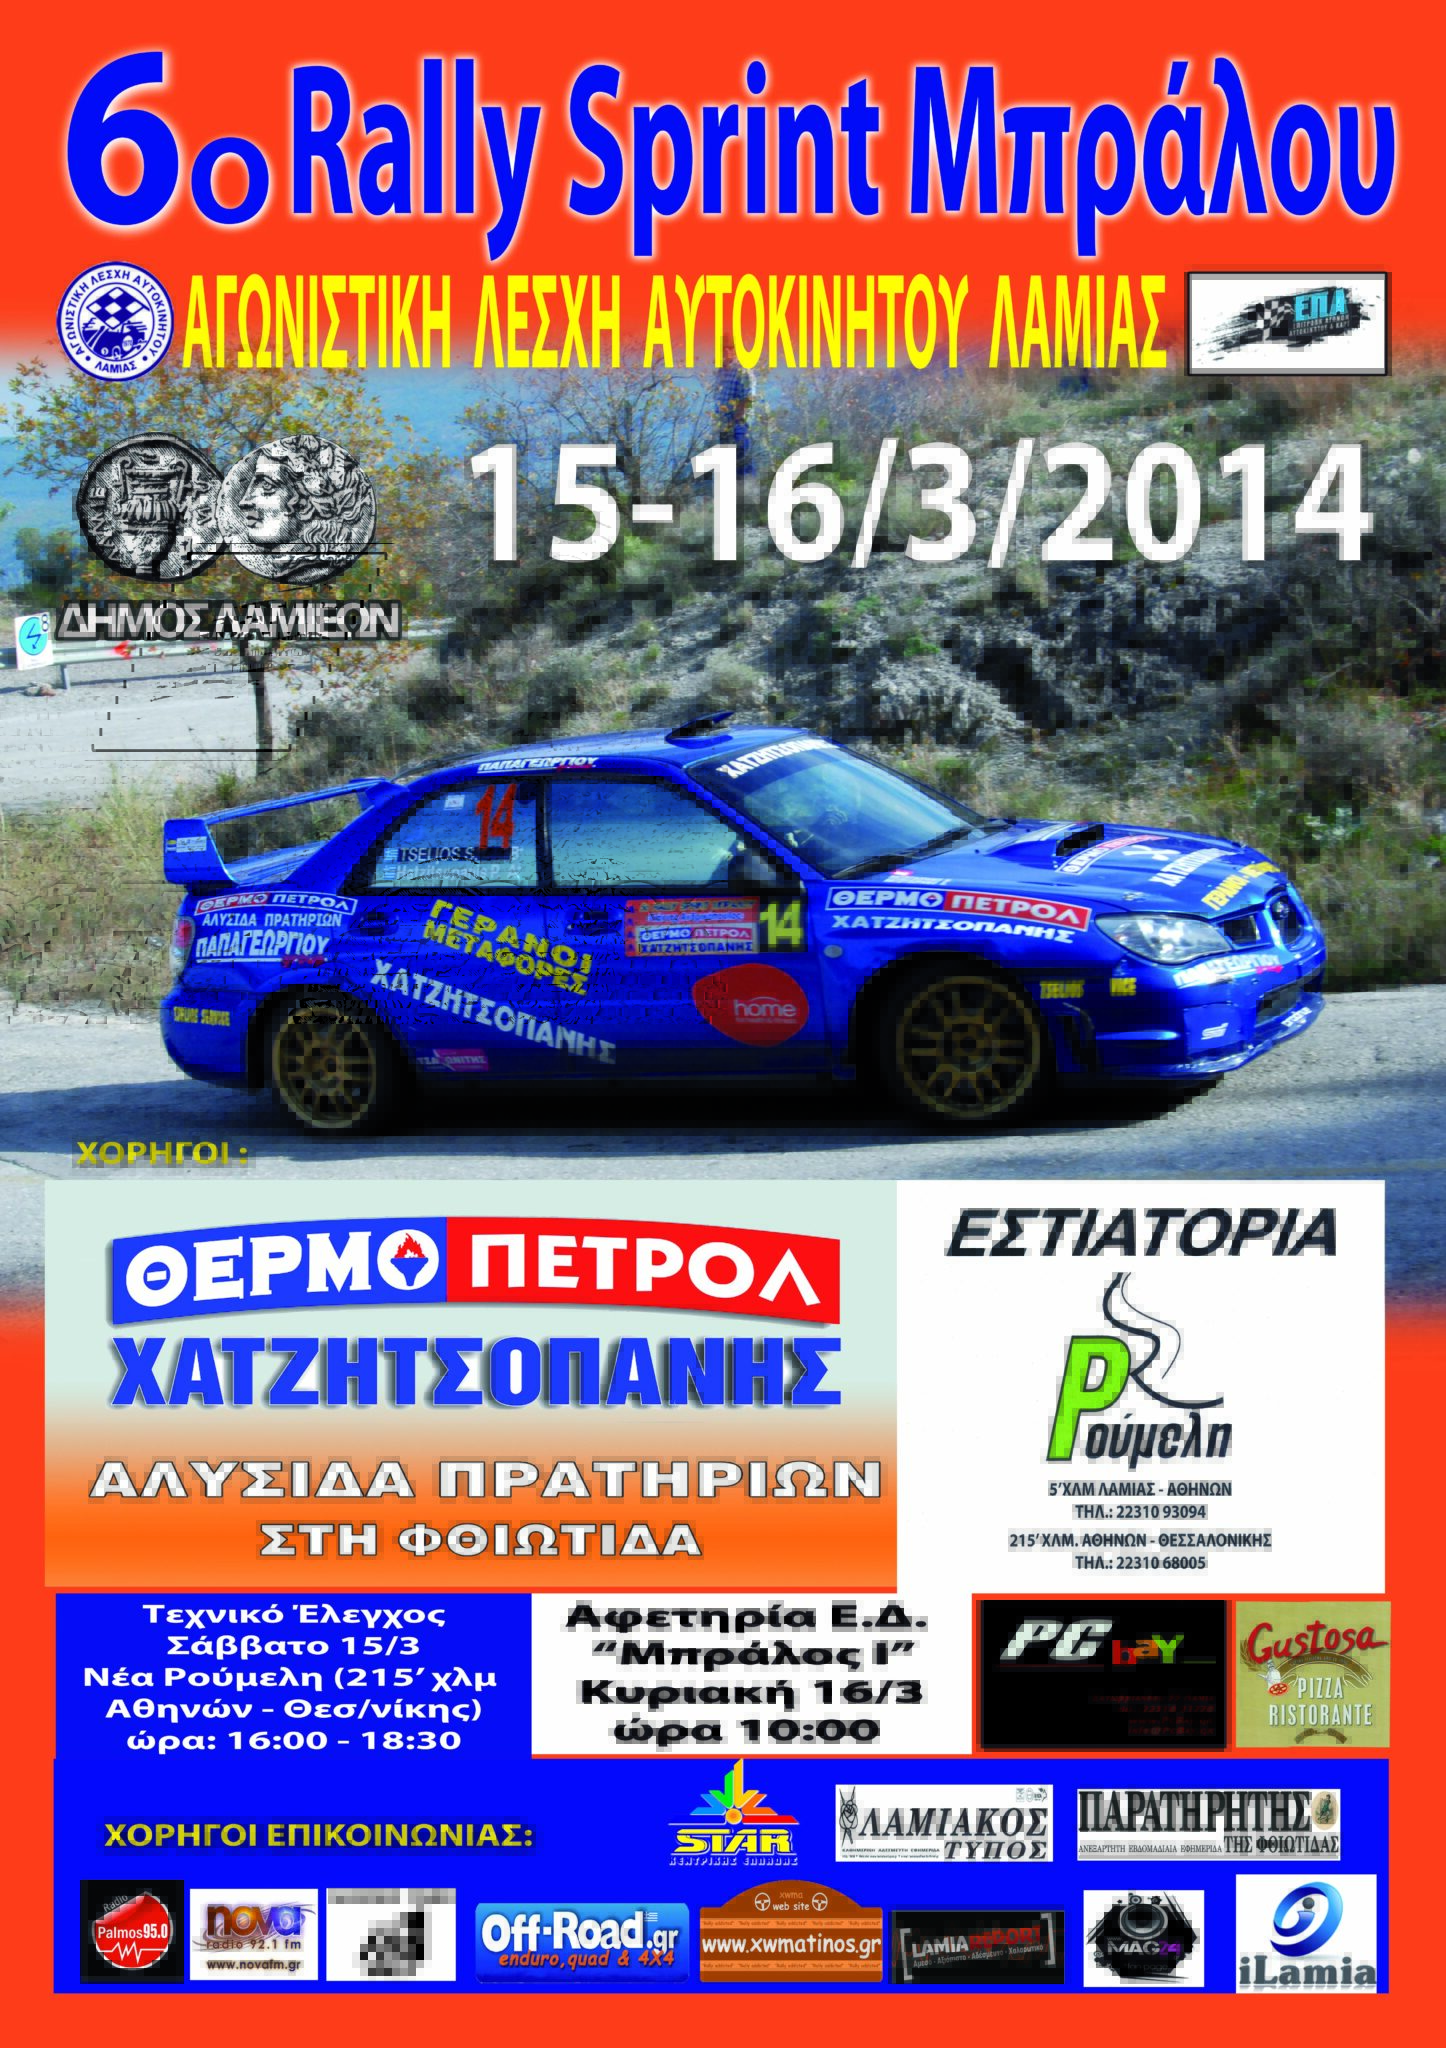 6o Rally Sprint Μπράλου 15-16 Μαρτίου 2014 Τελικές Συμμετοχες